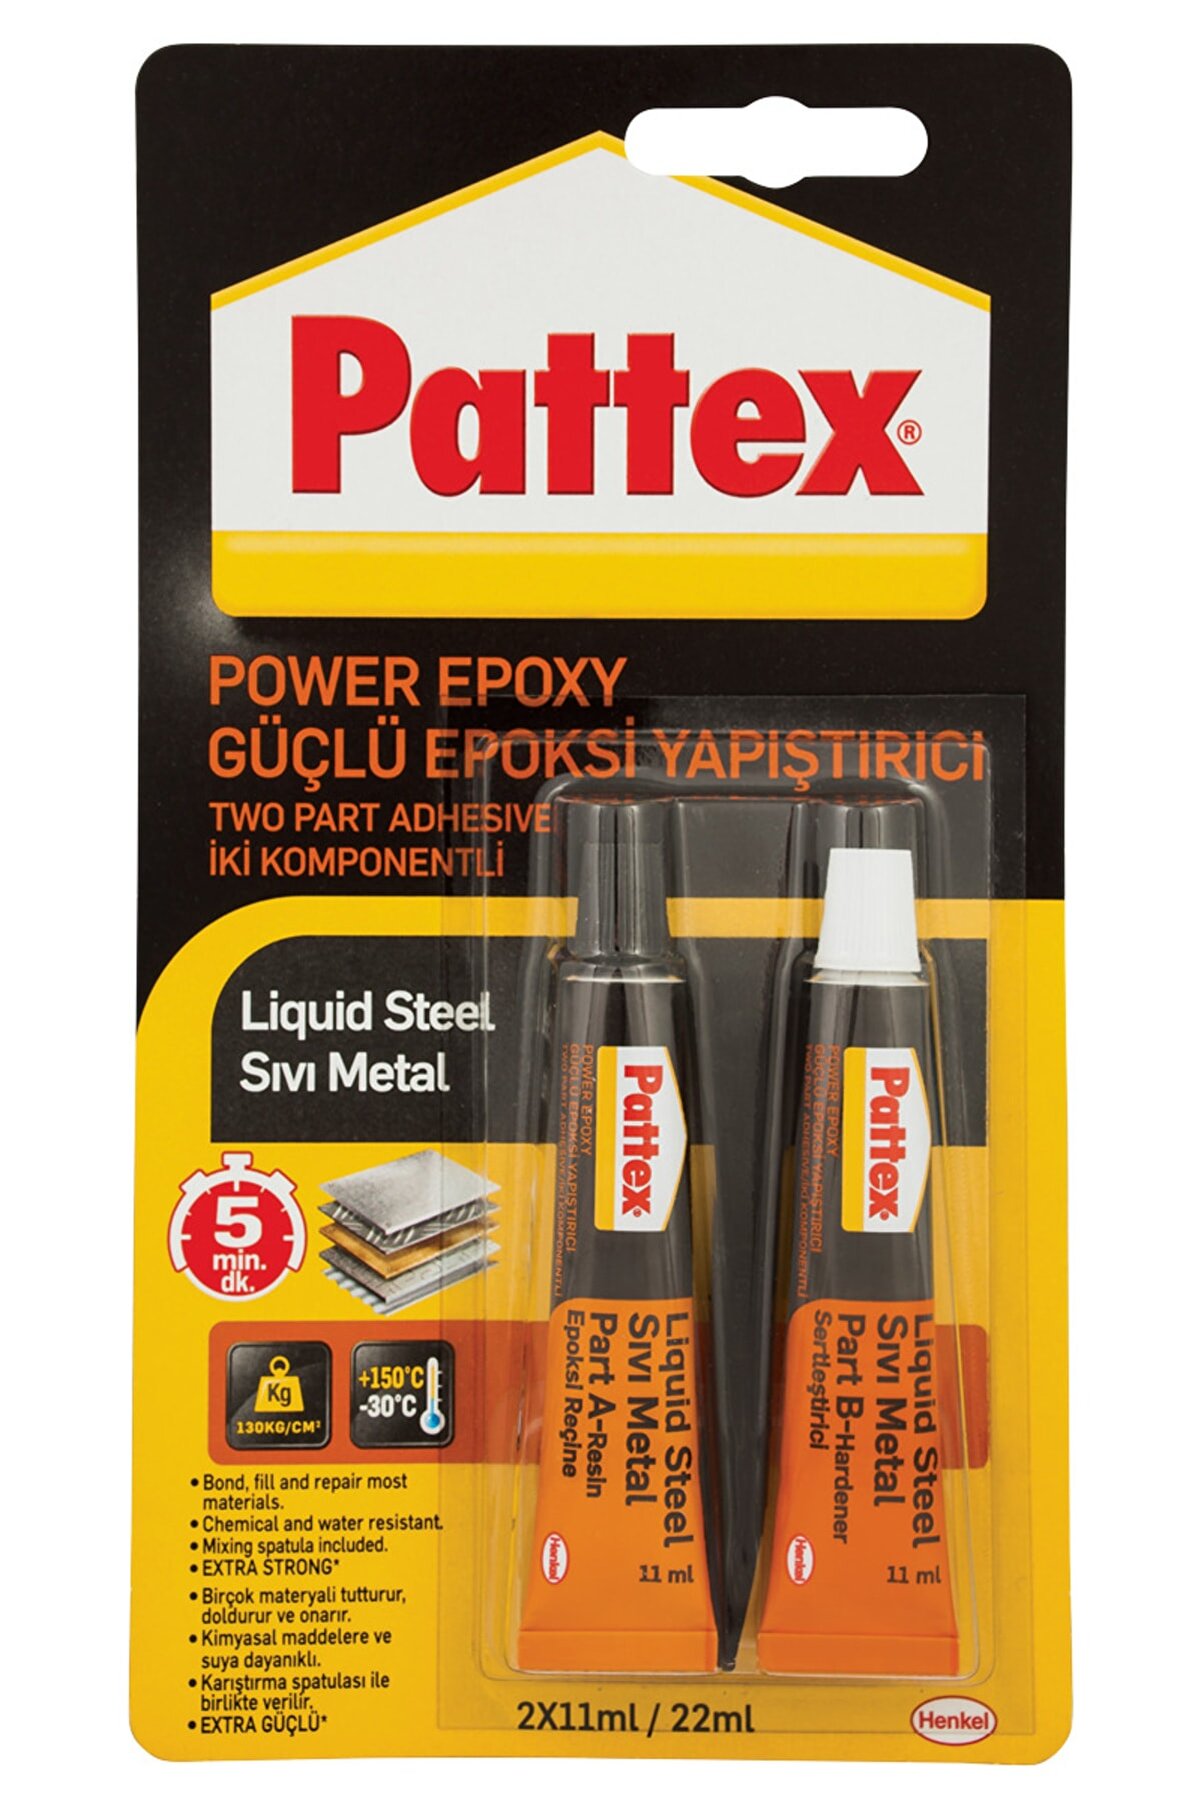 Pattex Power Epoxy Güçlü Epoksi Yapıştırıcı Sıvı Metal 31 Gr 2 ×11 Ml